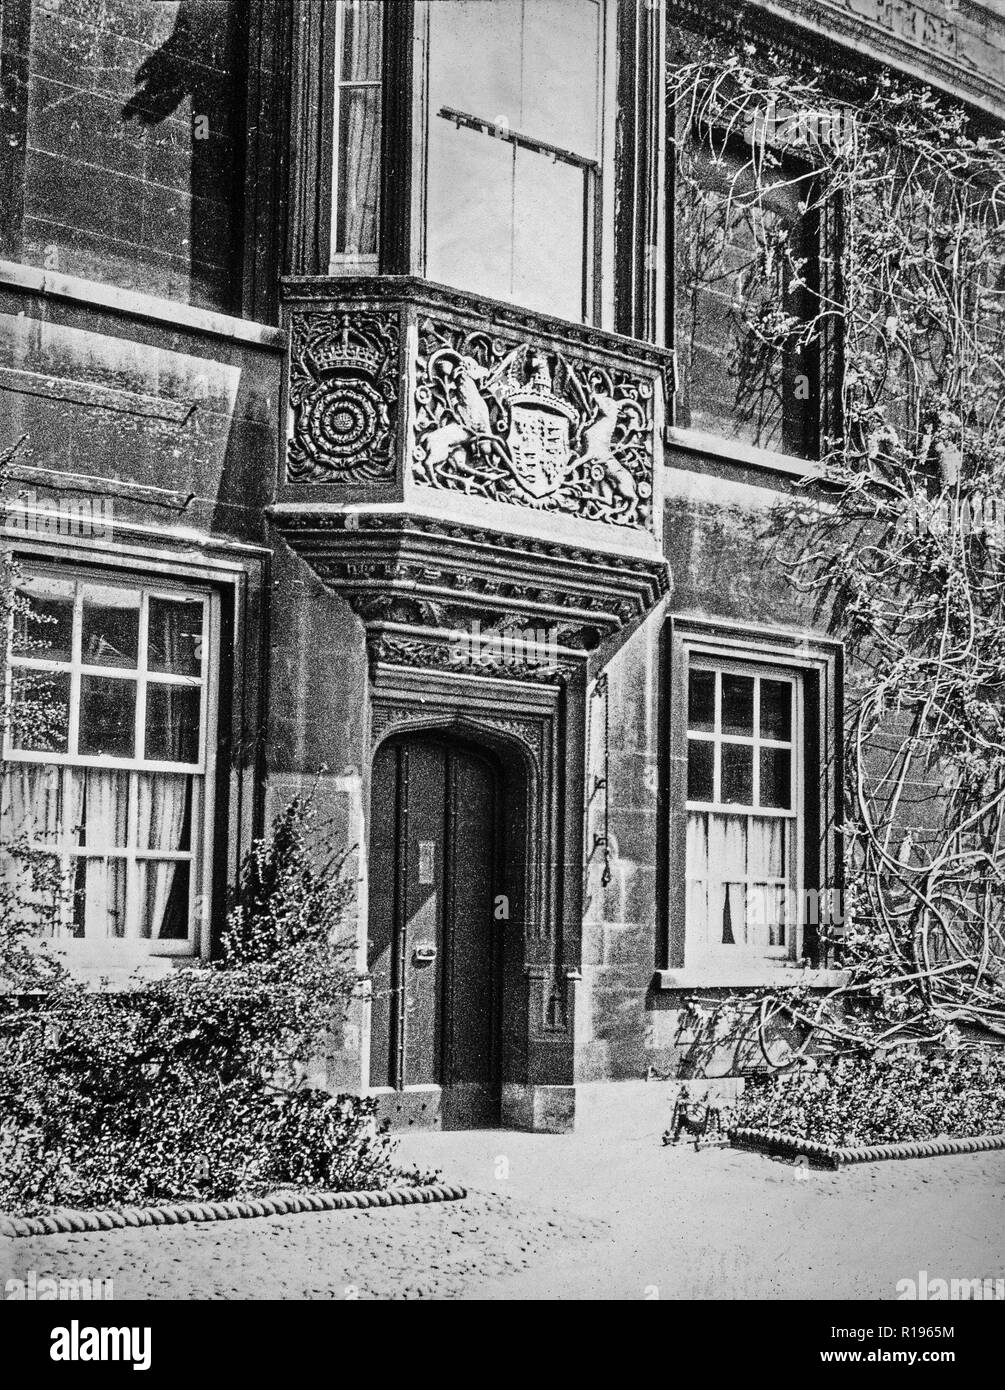 Vintage fotografia in bianco e nero, adottata nel maggio 1924, mostrando l'ingresso al Lodge a Cristo's College, Università di Cambridge, Inghilterra. Foto Stock